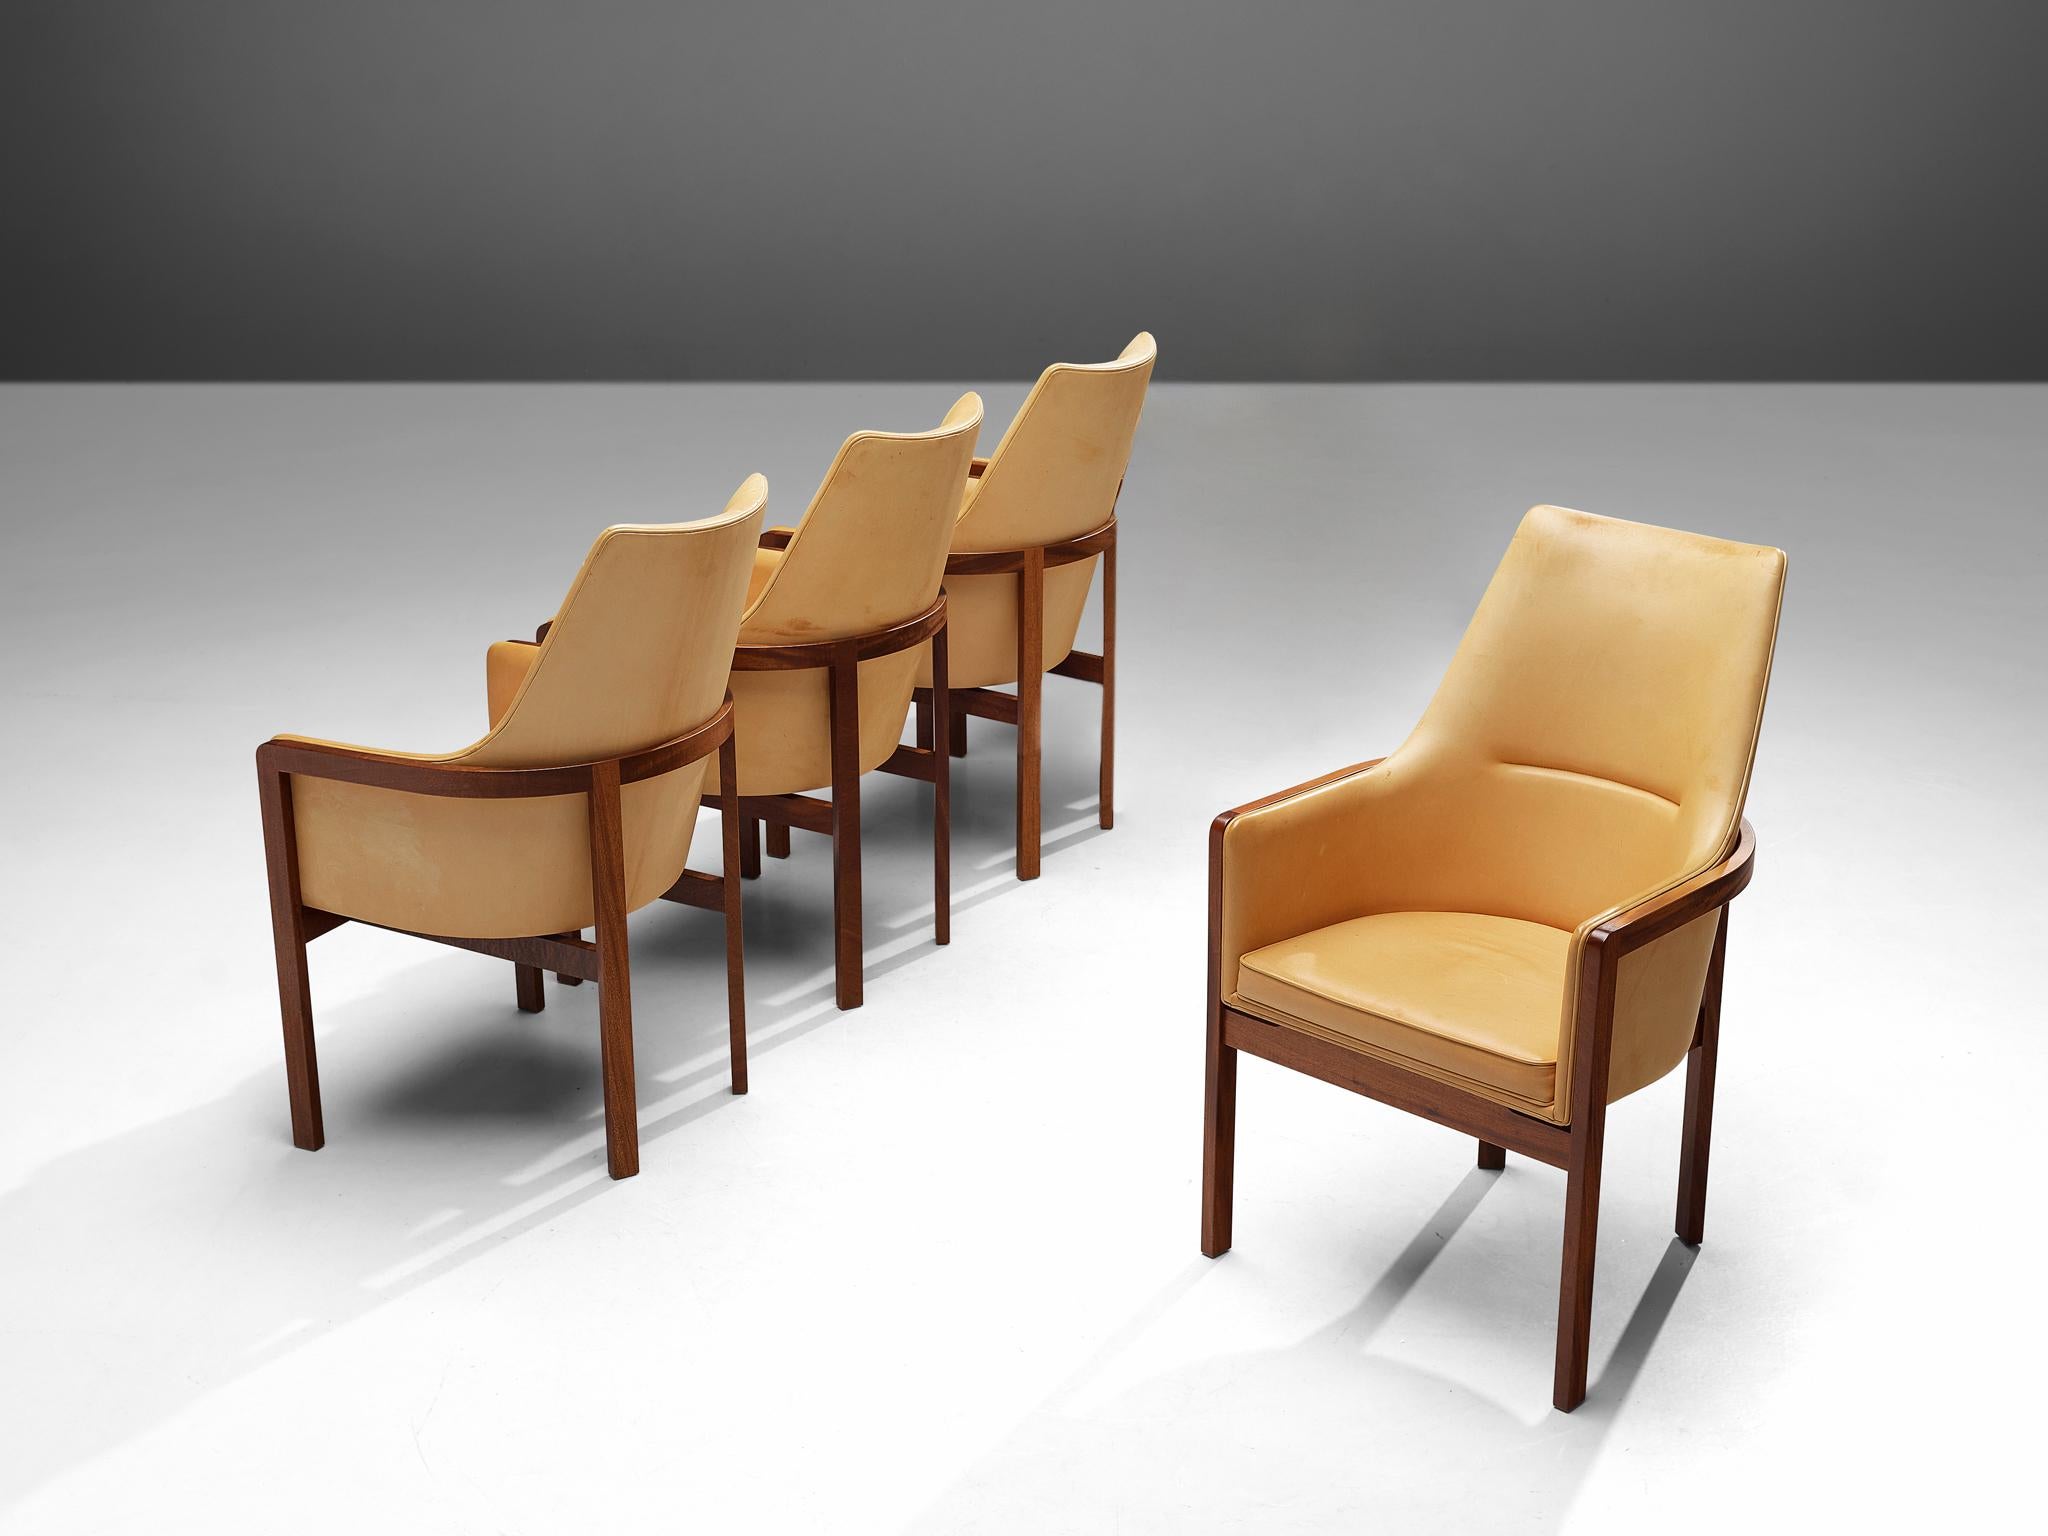 Bernt Petersen pour Søborg Møbelfabrik, ensemble de quatre chaises de salle à manger, cuir, acajou, Danemark, années 1960

Ensemble élégant et confortable de quatre chaises de salle à manger conçues par Bernt Petersen dans les années 1960. Les